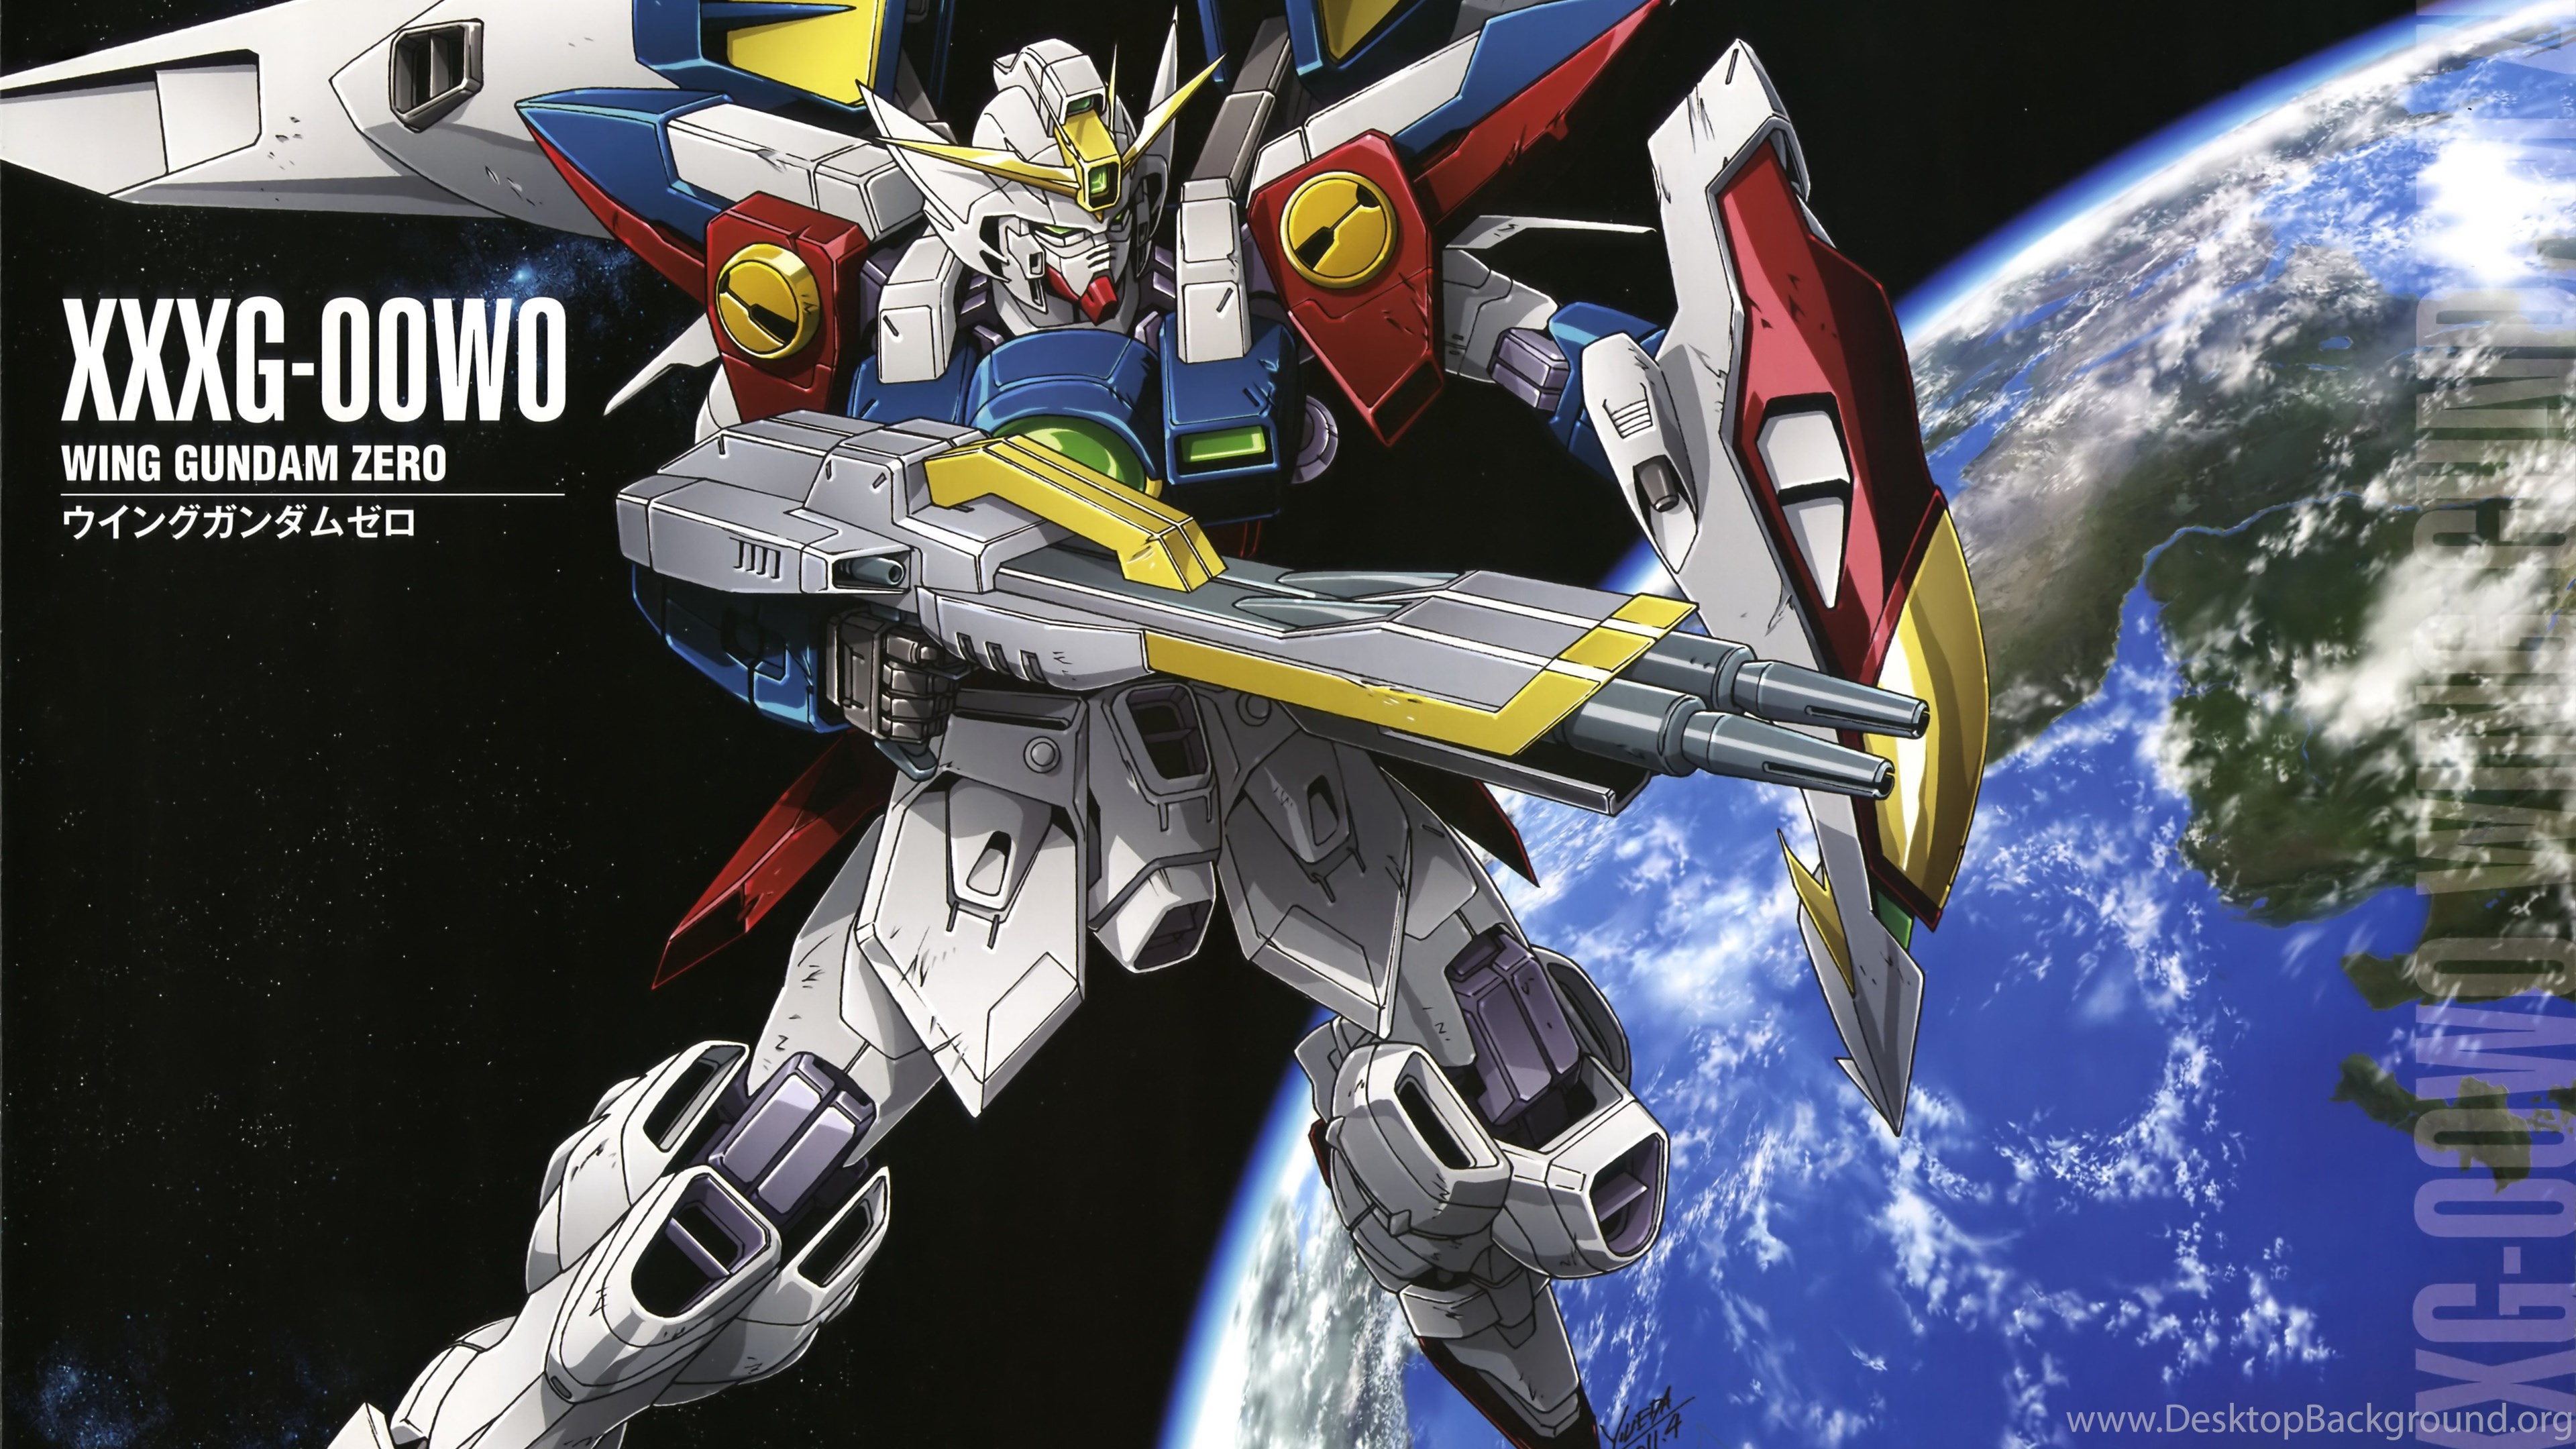 Xxxg 00w0 Wing Gundam Zero The Gundam Wiki Wikia Desktop Background